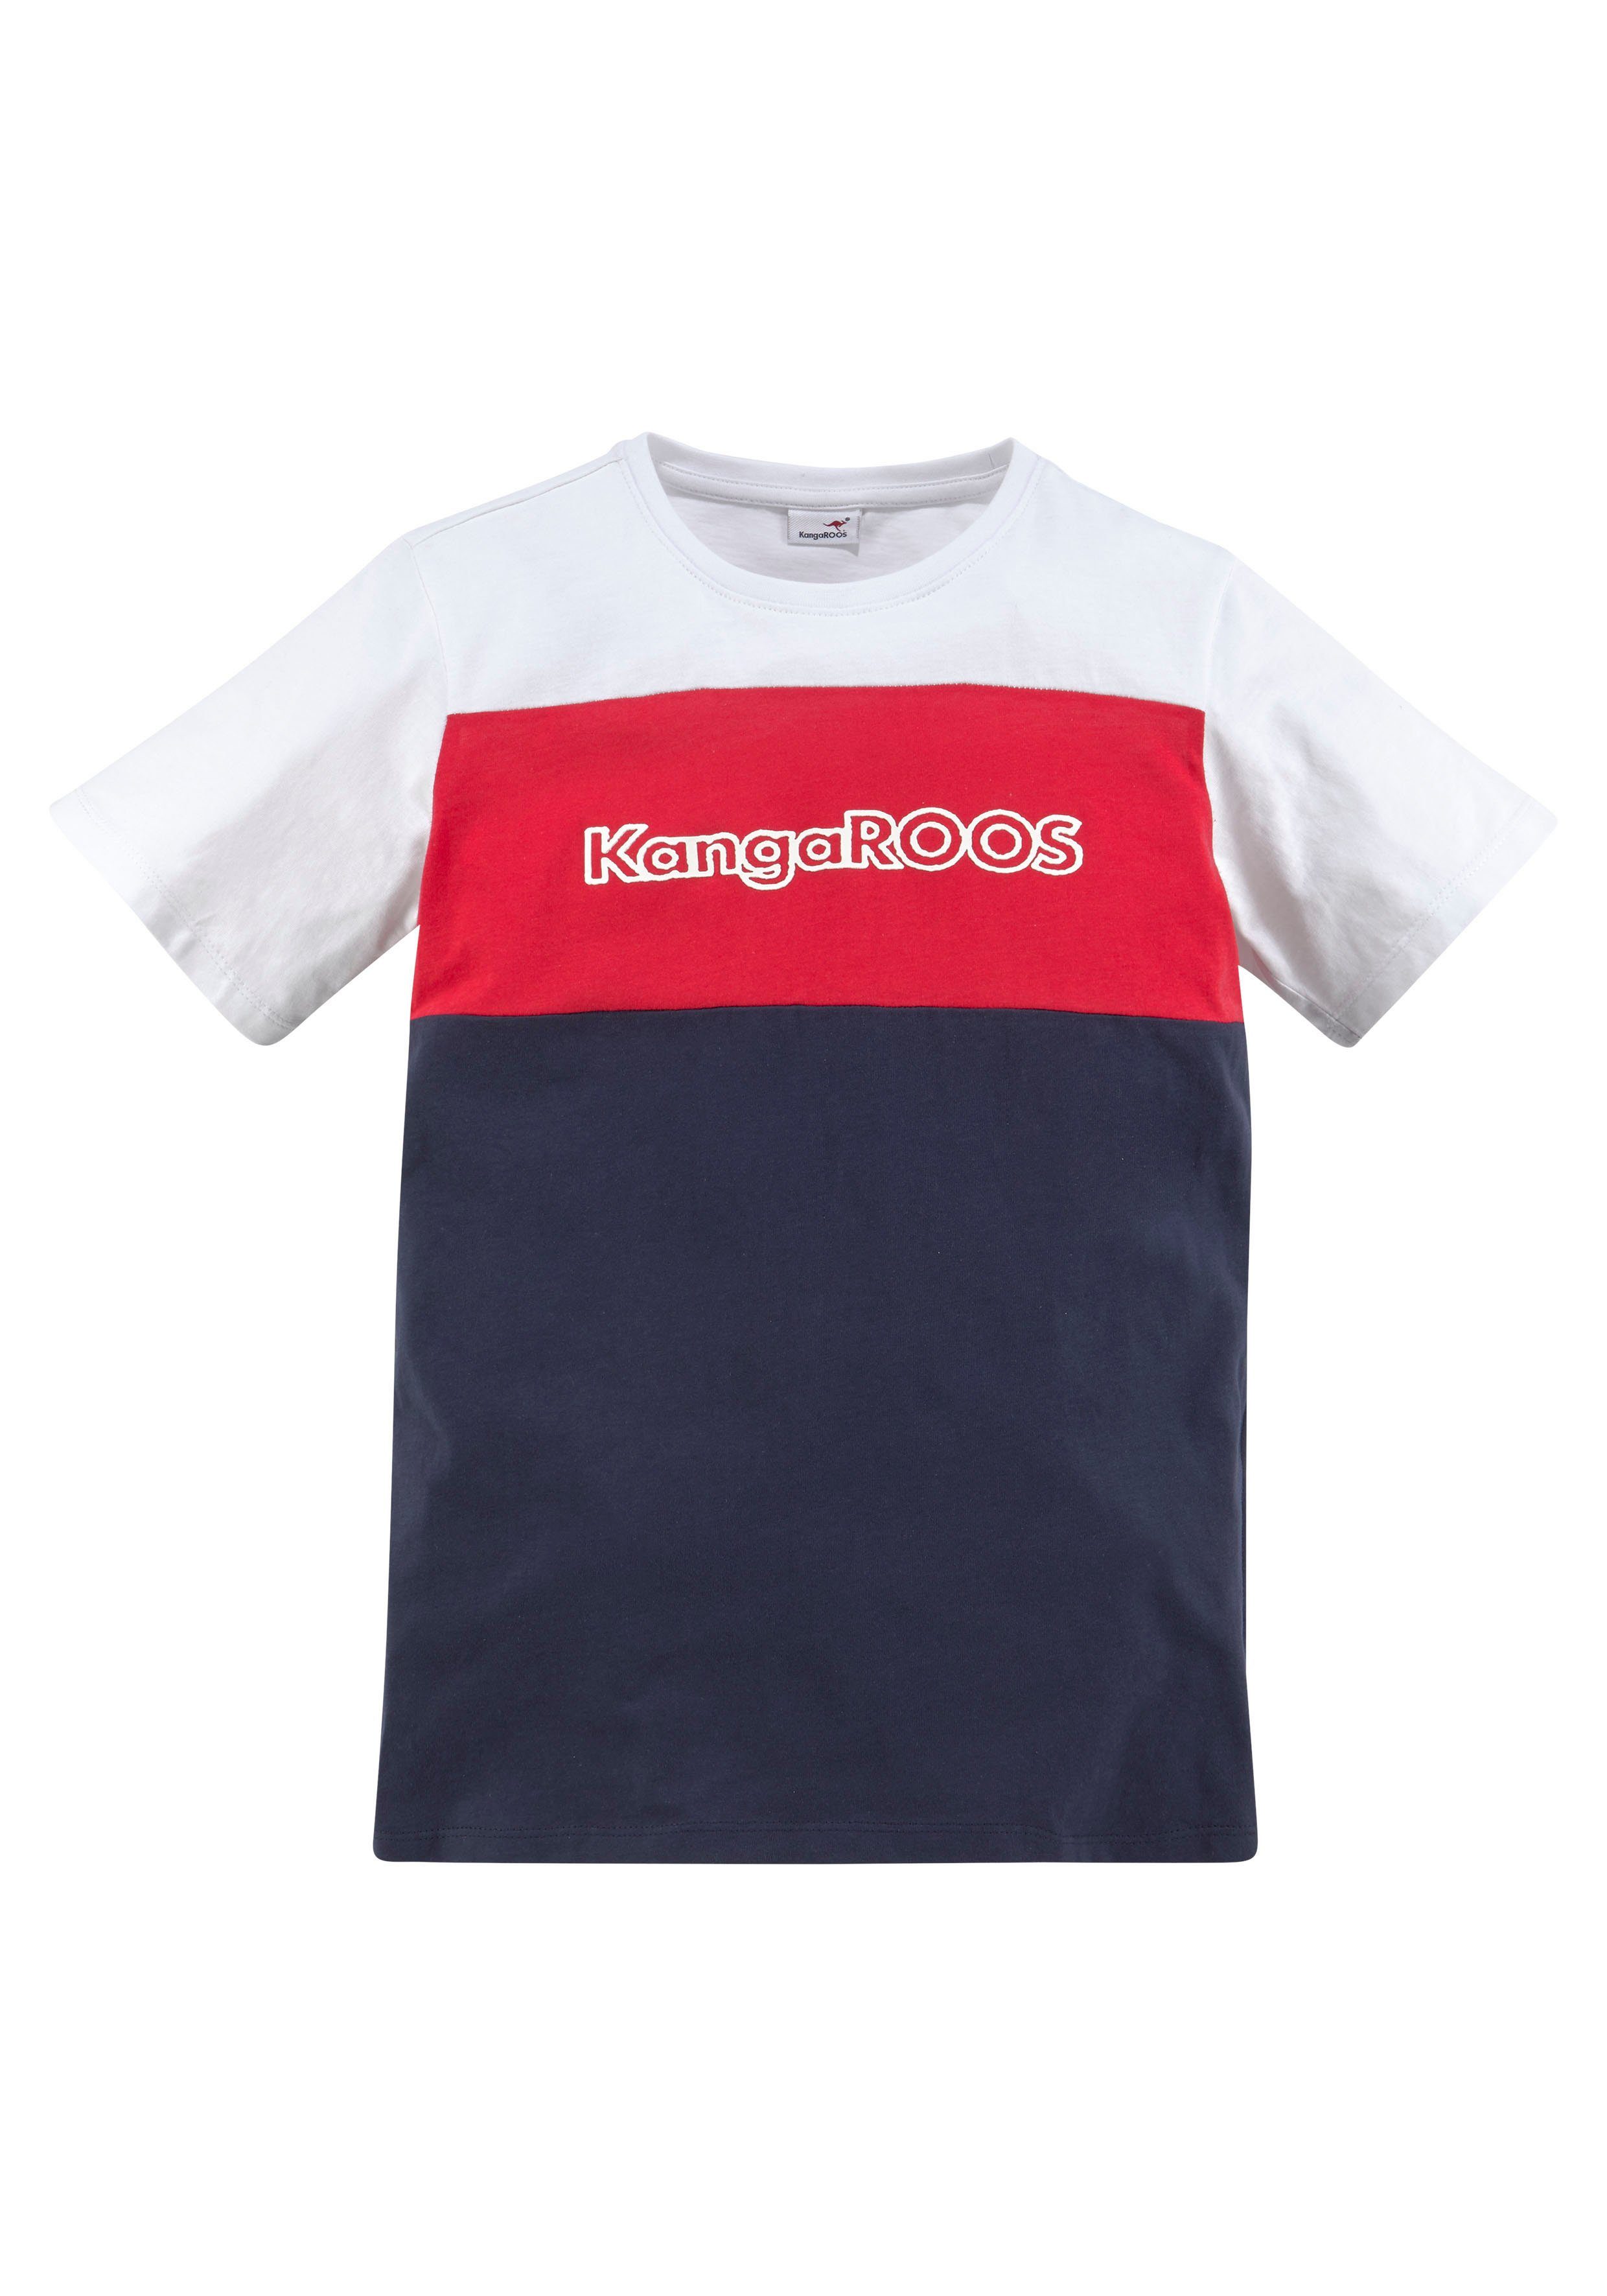 T-Shirt KangaROOS in Colorblockdesign